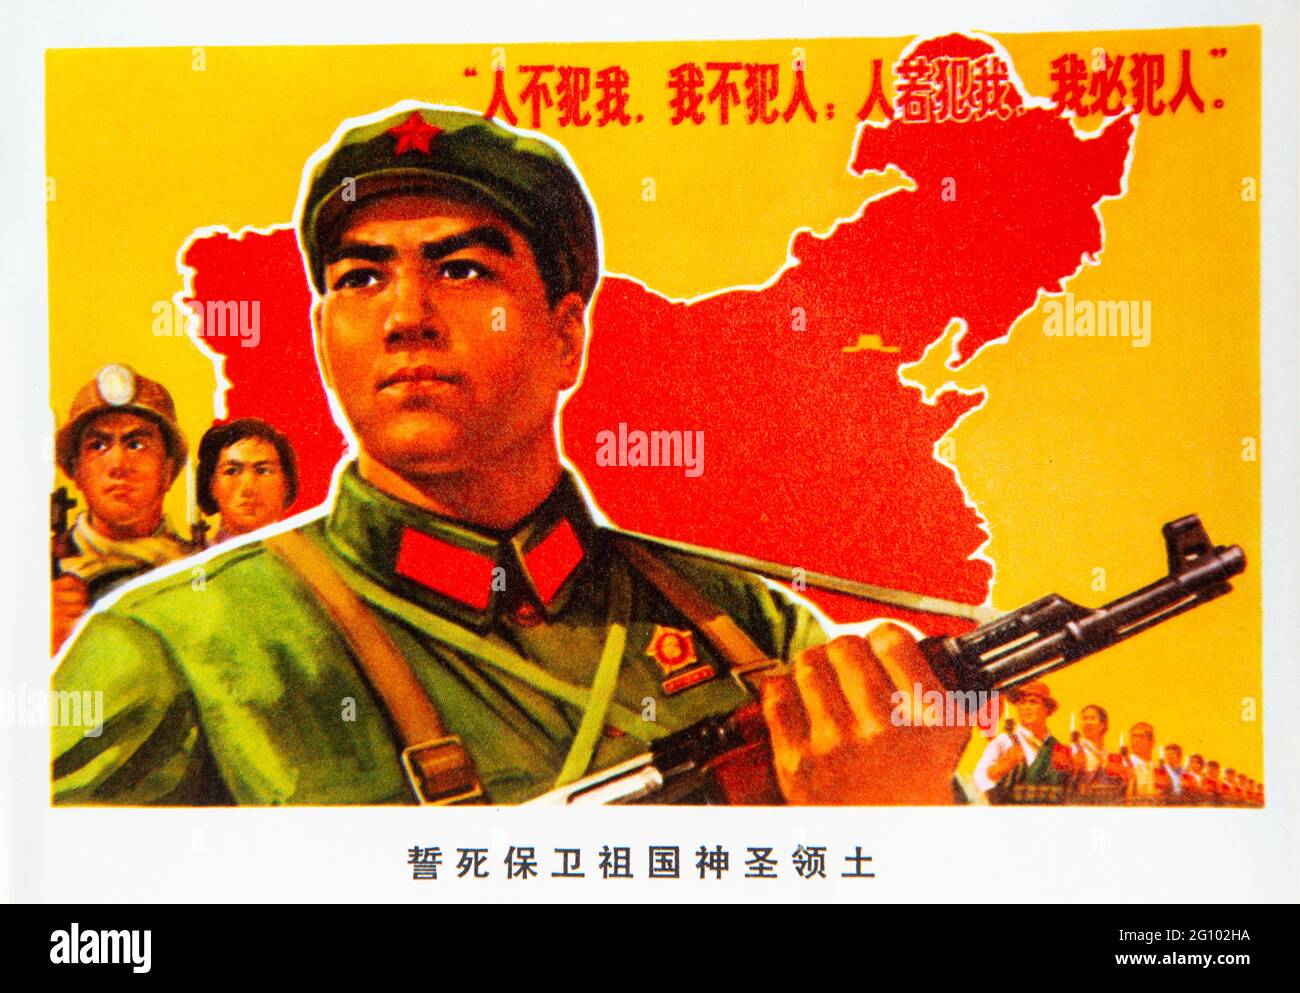 Un manifesto di propaganda politica durante la rivoluzione culturale in Cina. Foto Stock